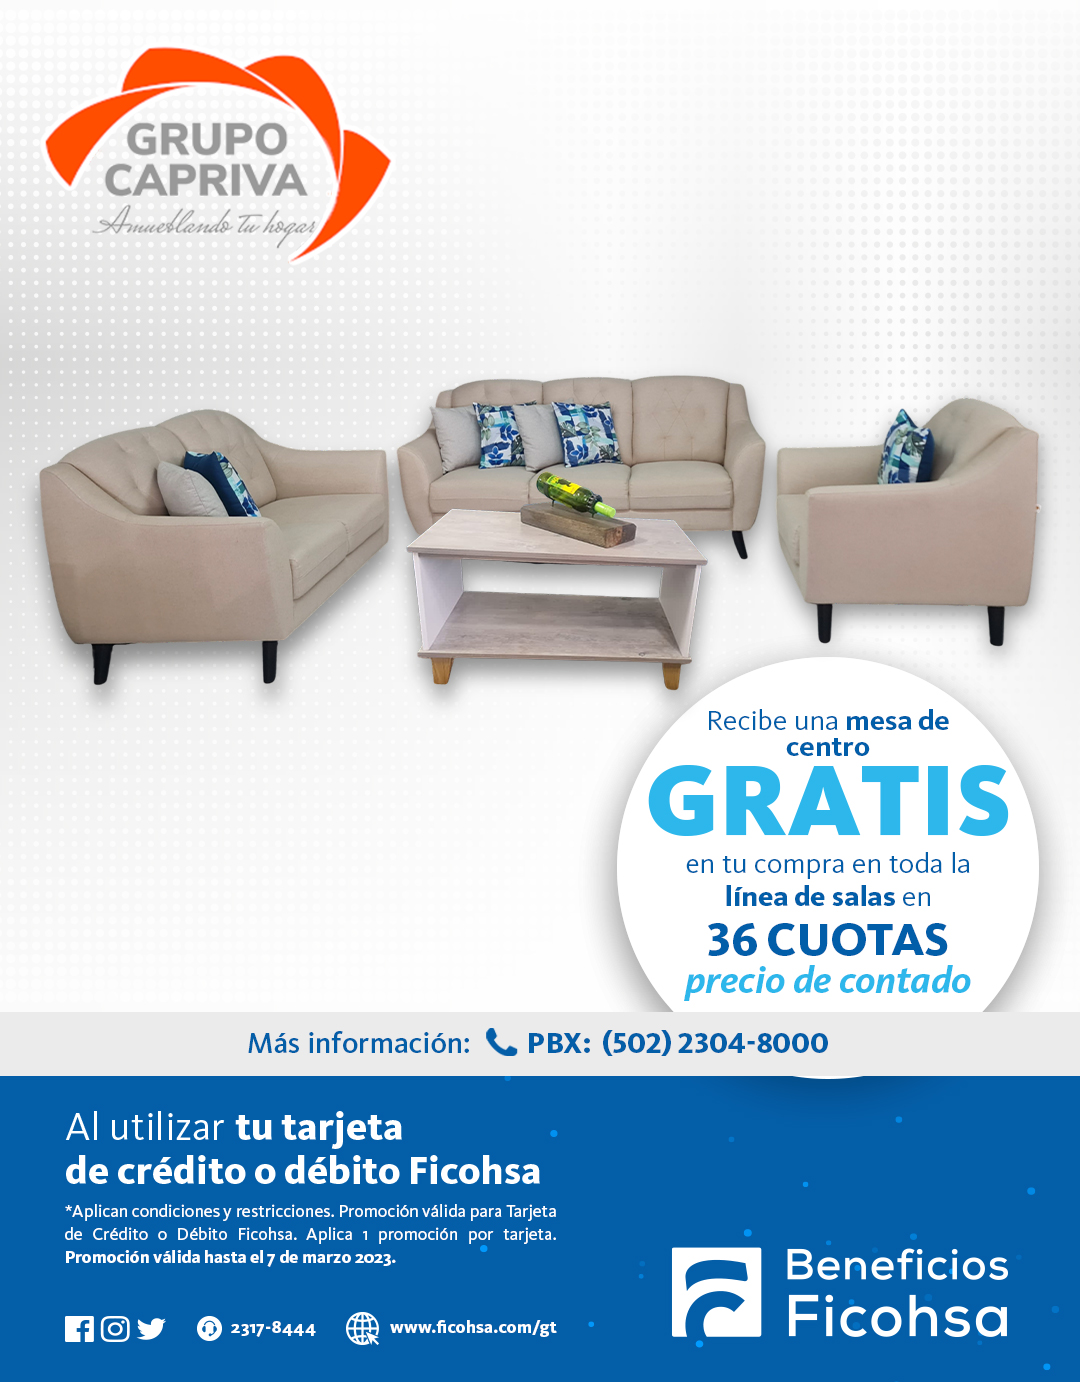 Llévate una Mesa de Centro GRATIS en la compra de tu sala en Grupo Capriva